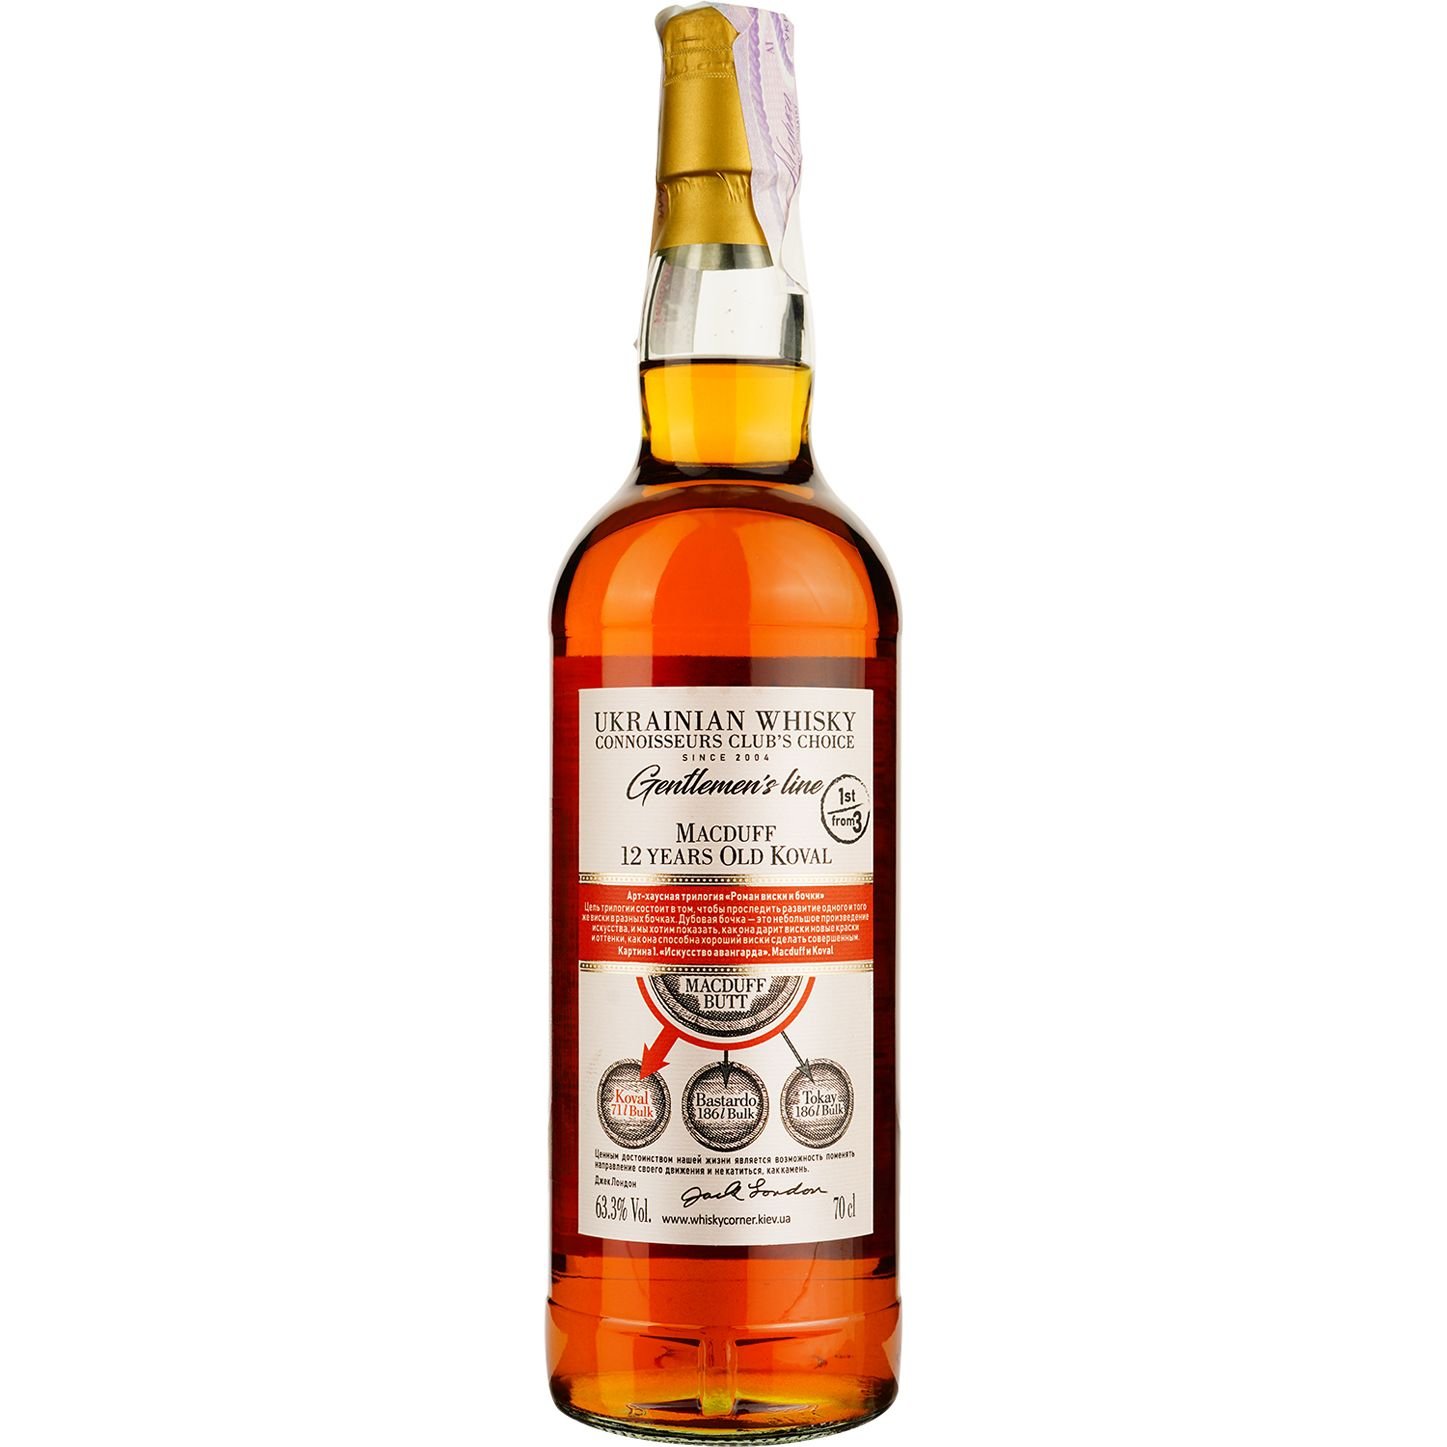 Віскі Macduff 12 Years Old Koval Single Malt Scotch Whisky, у подарунковій упаковці, 63,3%, 0,7 л - фото 4